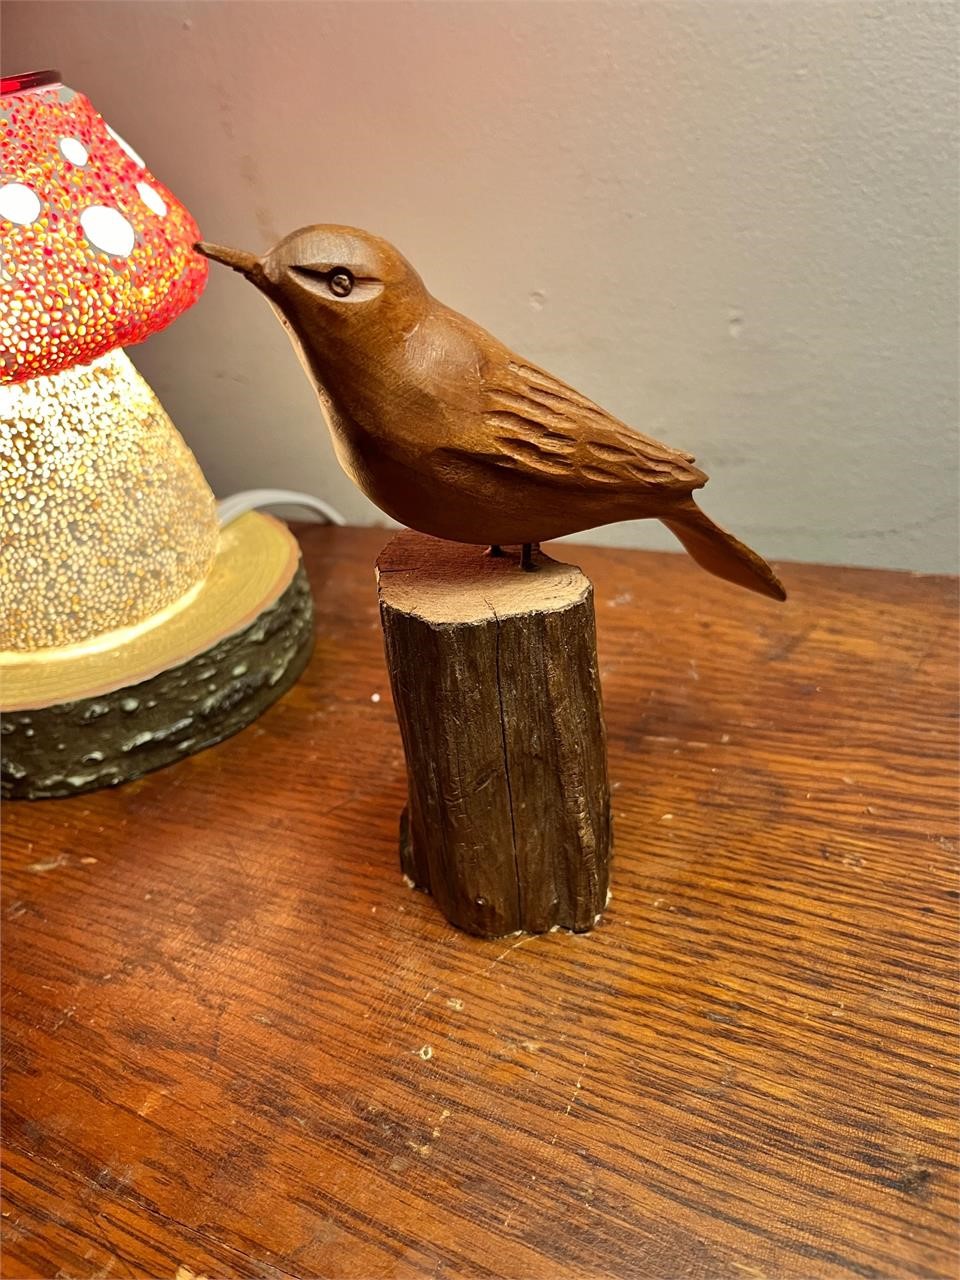 Vintage Handcrafted Bird Figure on Wood Stump